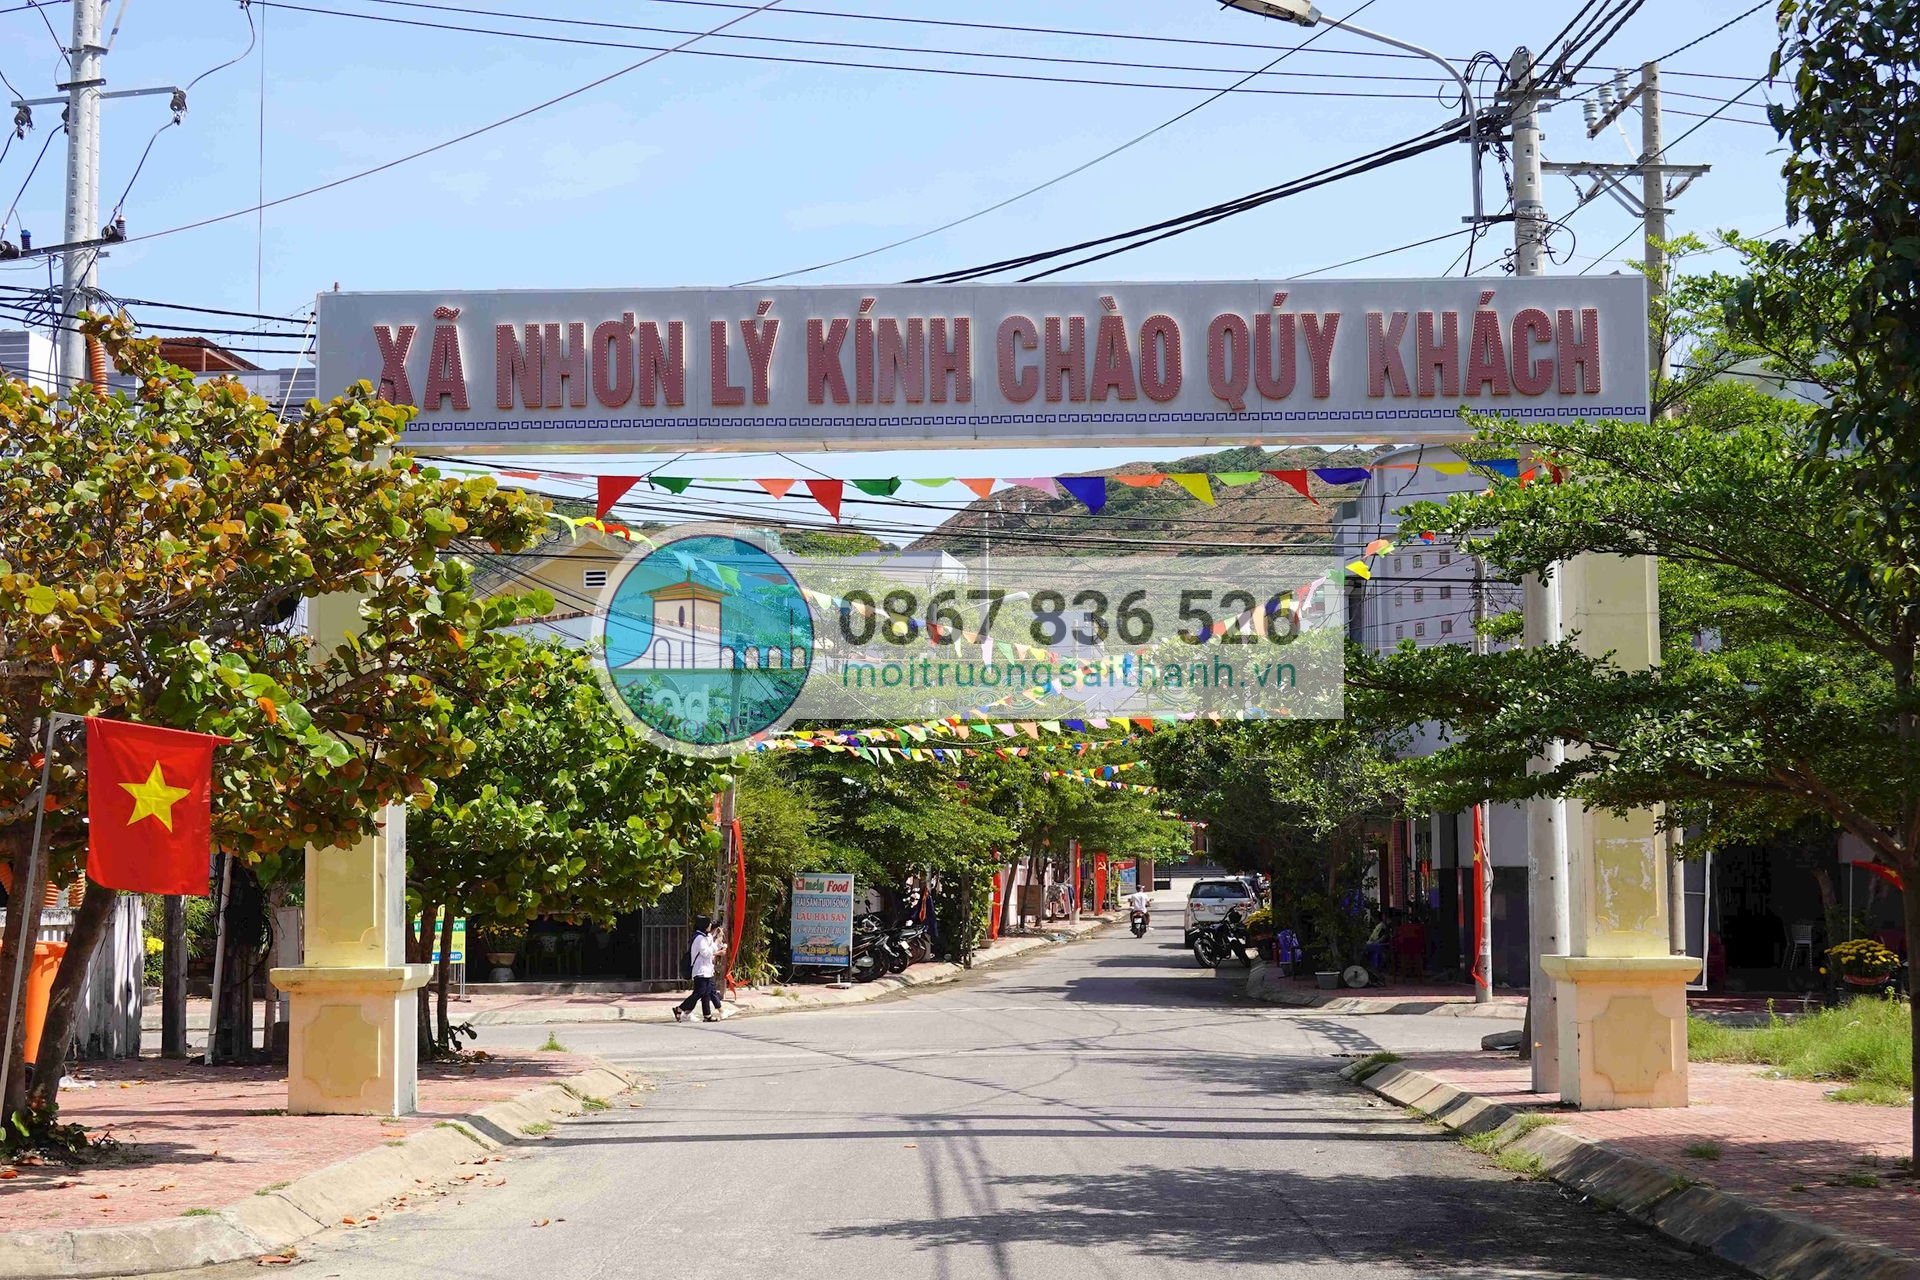 Xã Nhơn Lý thành phố Quy Nhơn đang là điểm du lịch hấp dẫn tại Bình Định.